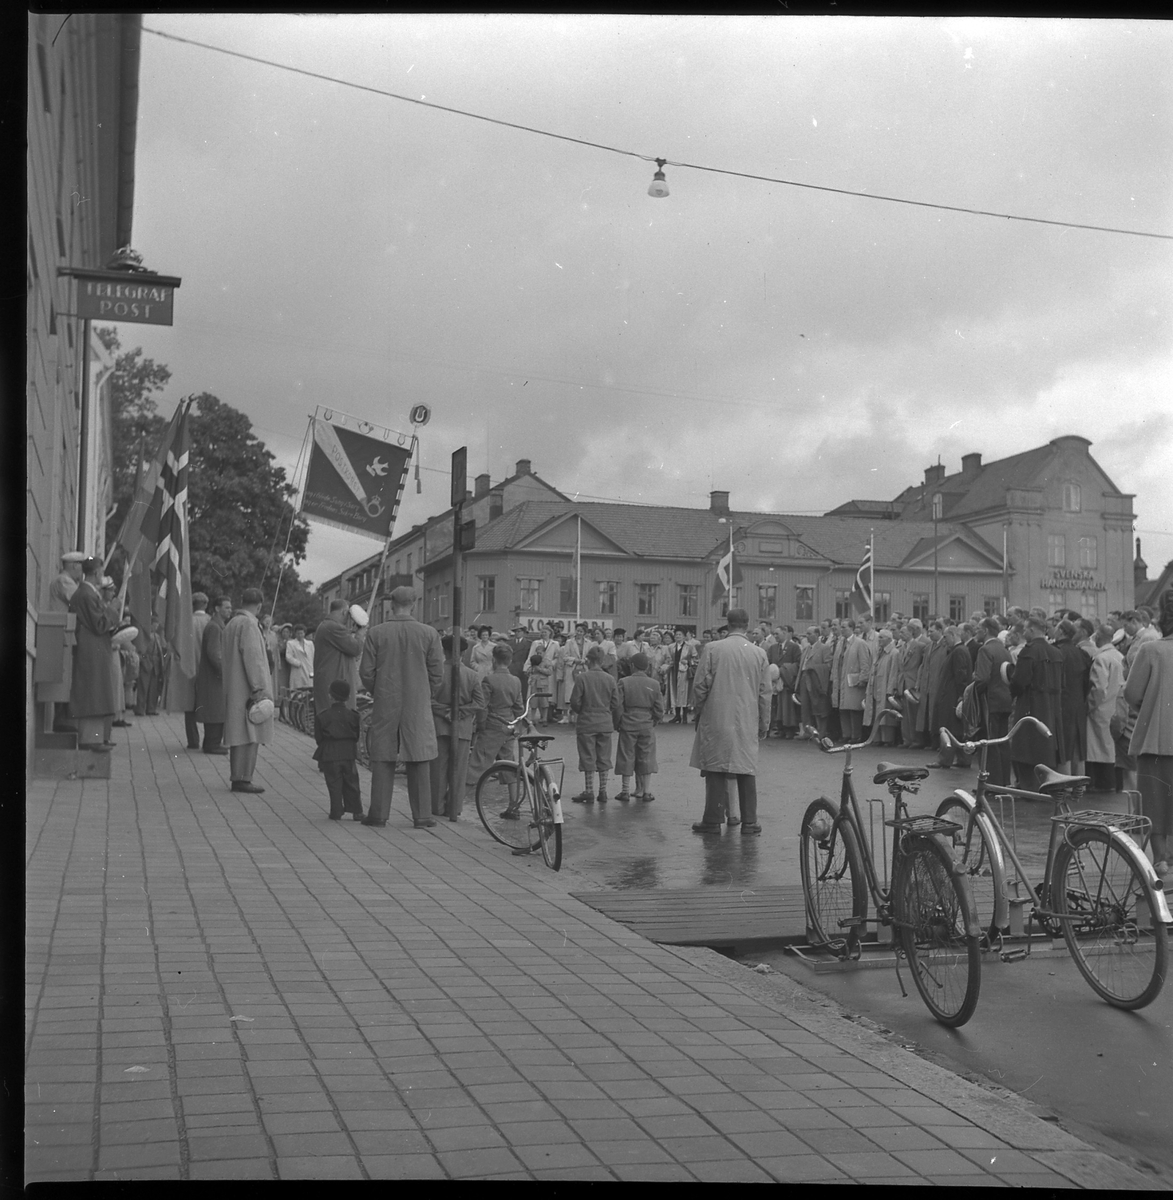 Samling på Stora torget framför post- och televerket, maj 1950. En kör, troligen från Norge, framträder.